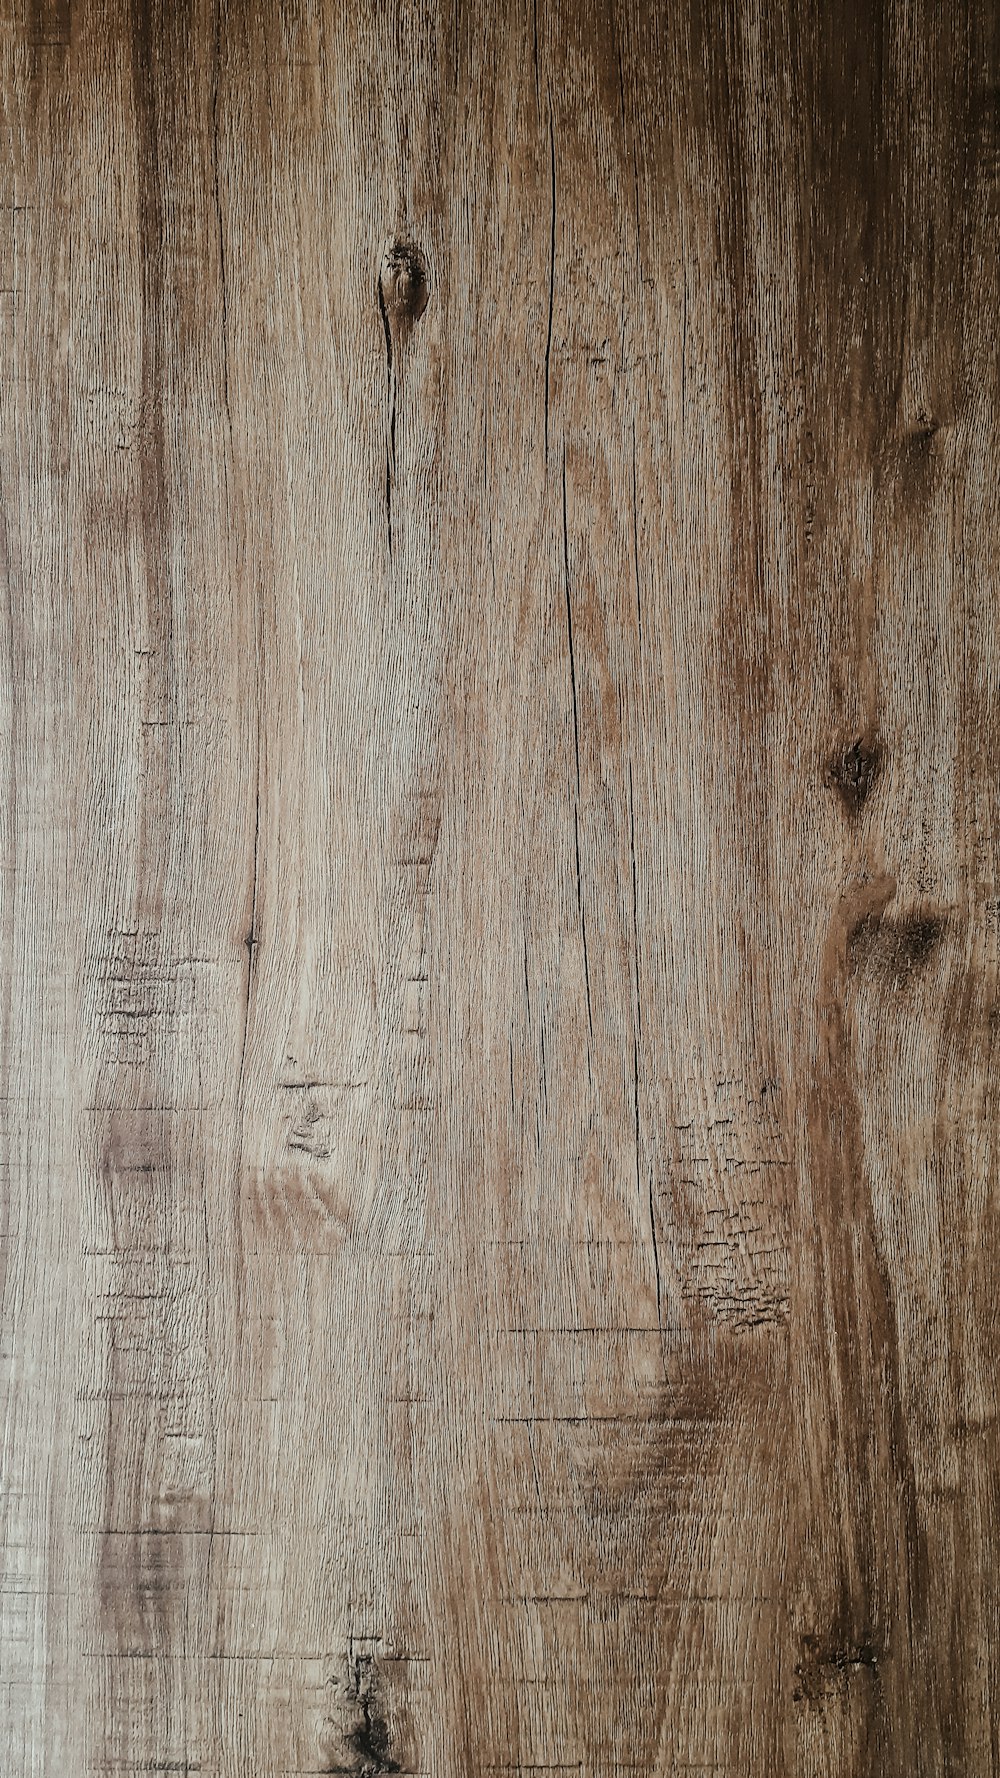 Wood Wallpapers: Free HD Download [500+ HQ] | Unsplash